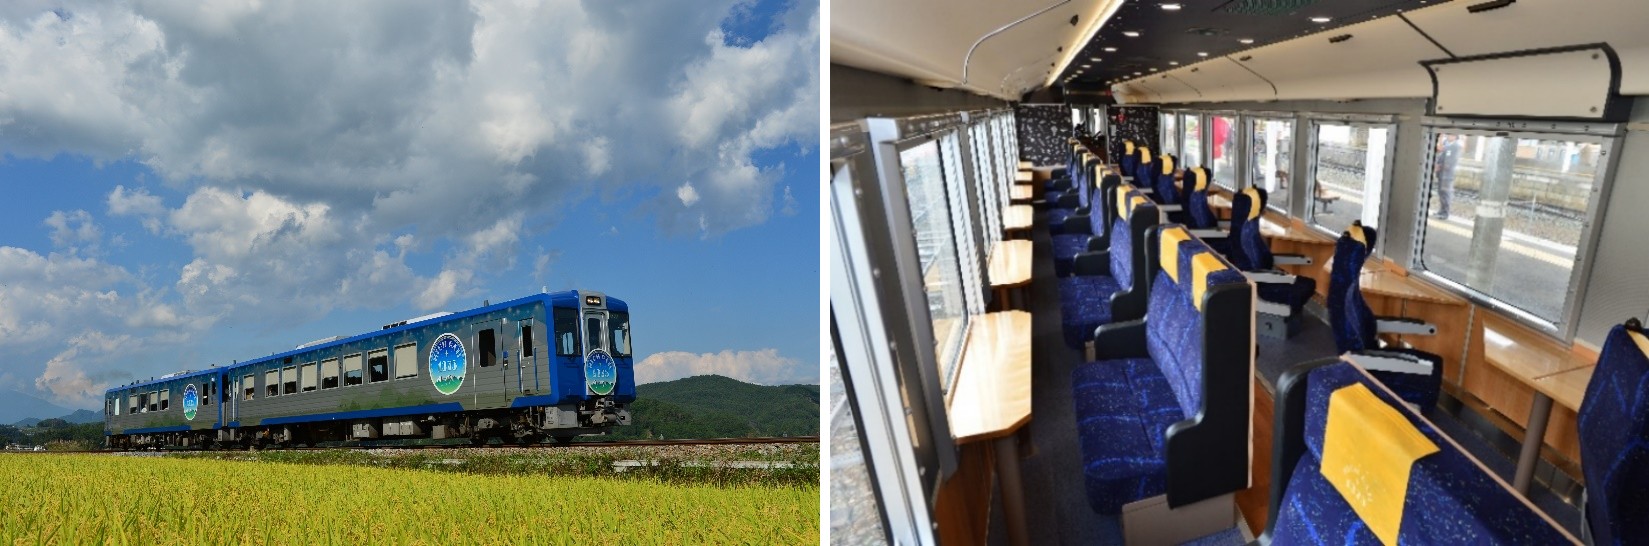 春节带上家人去体验温泉、列车、雪景 感受日本浪漫的冬天